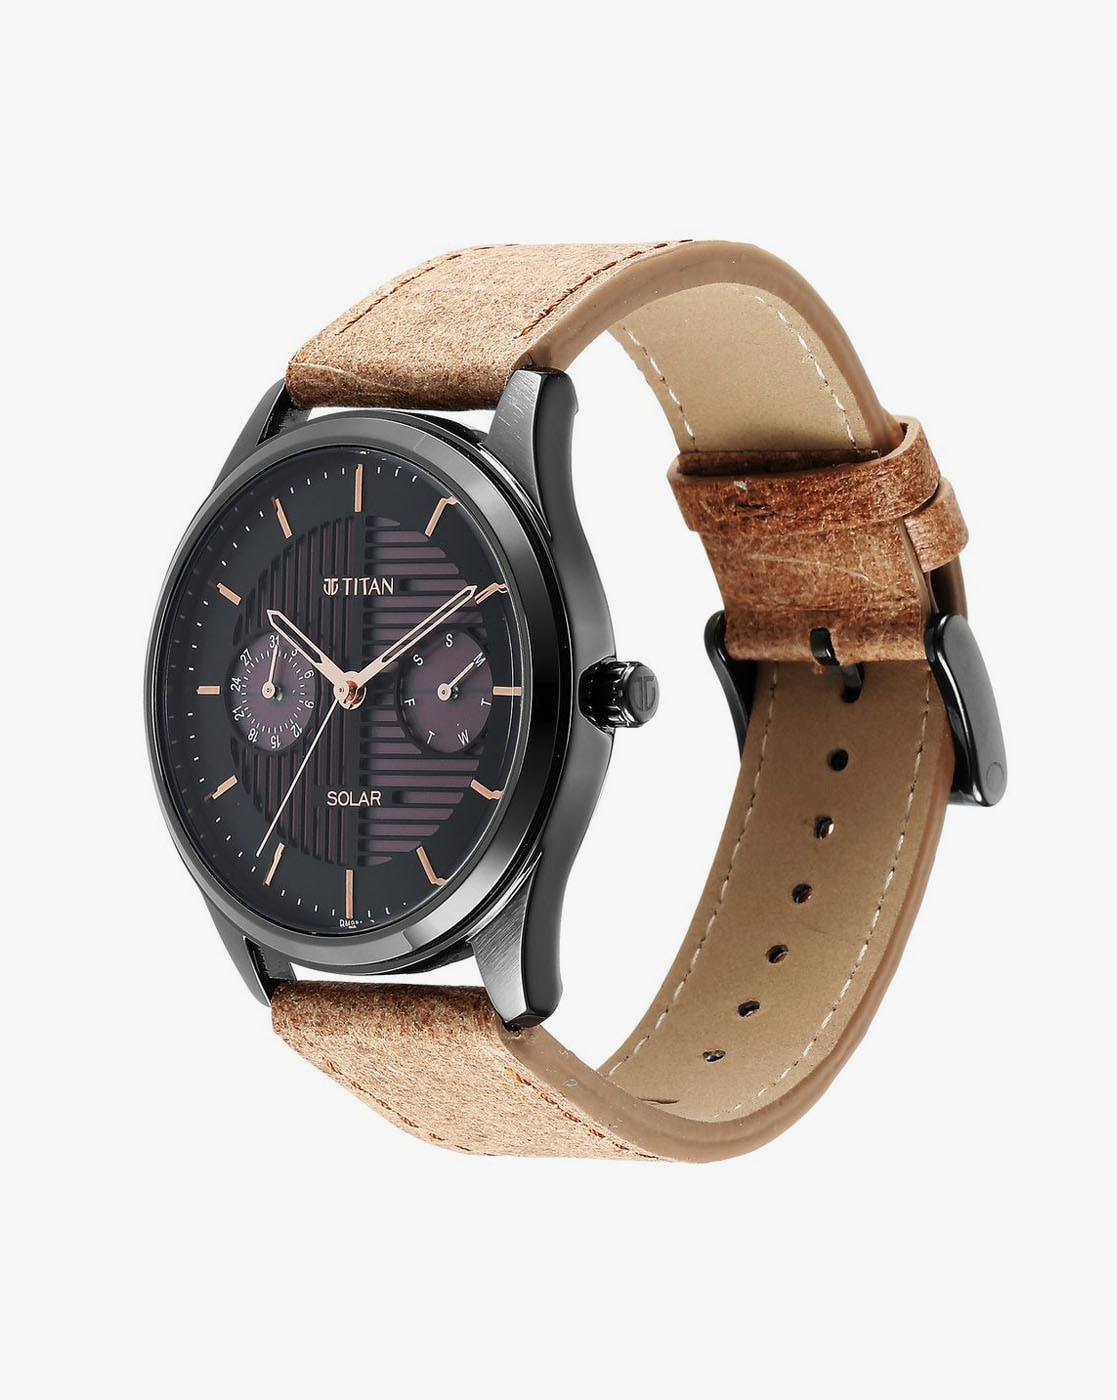 Buy Titan Analog Black Dial Men's Watch-1806WL05 at Amazon.in